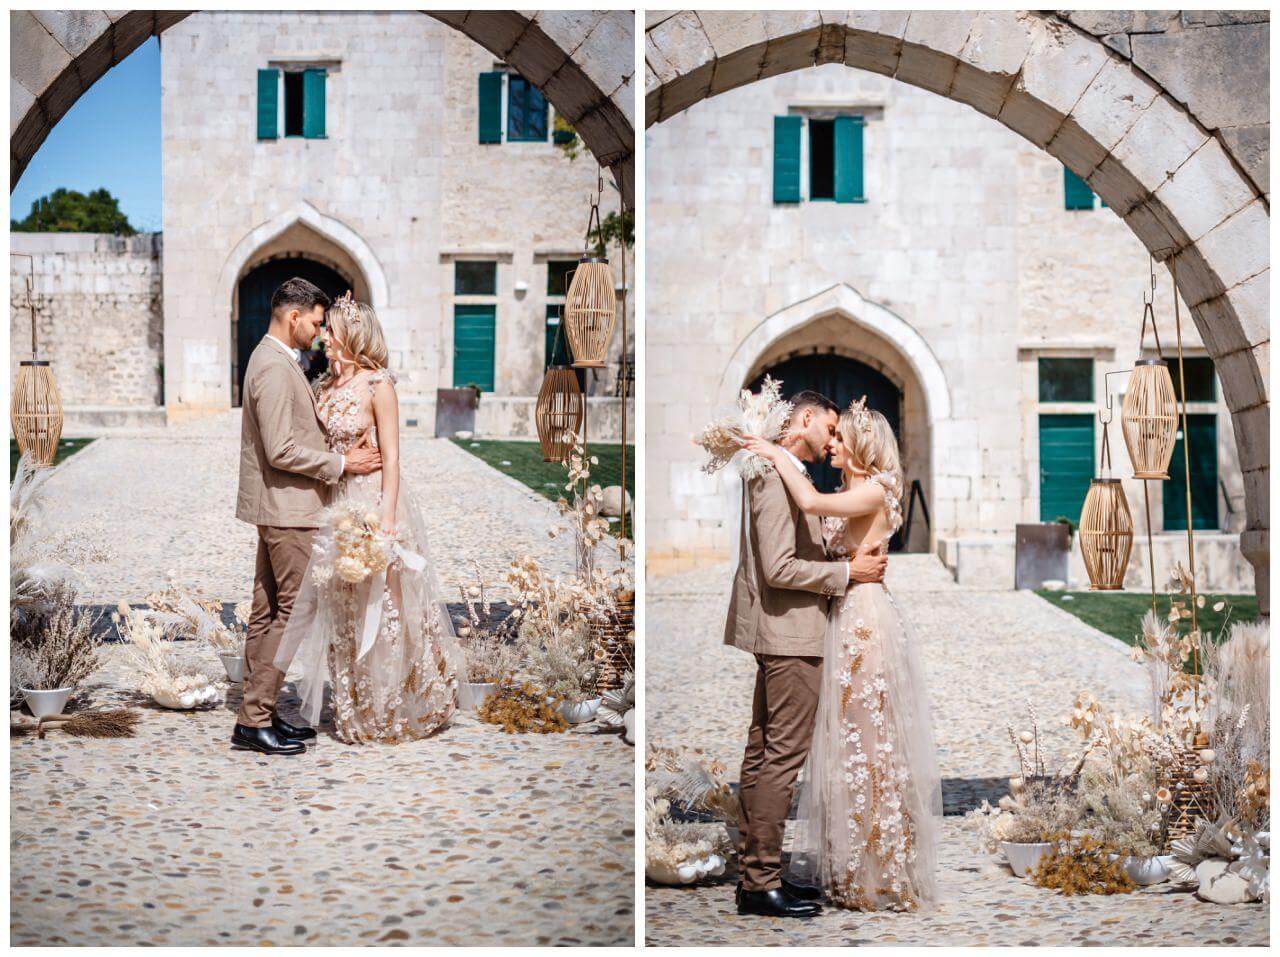 Natürliche Hochzeit in Kroatien Brautpaar bei freier Trauung mit Pampasgras Wedding Kroatien, wedding in croatia,hochzeitsplanerin kroatien, hochzeit in kroatien